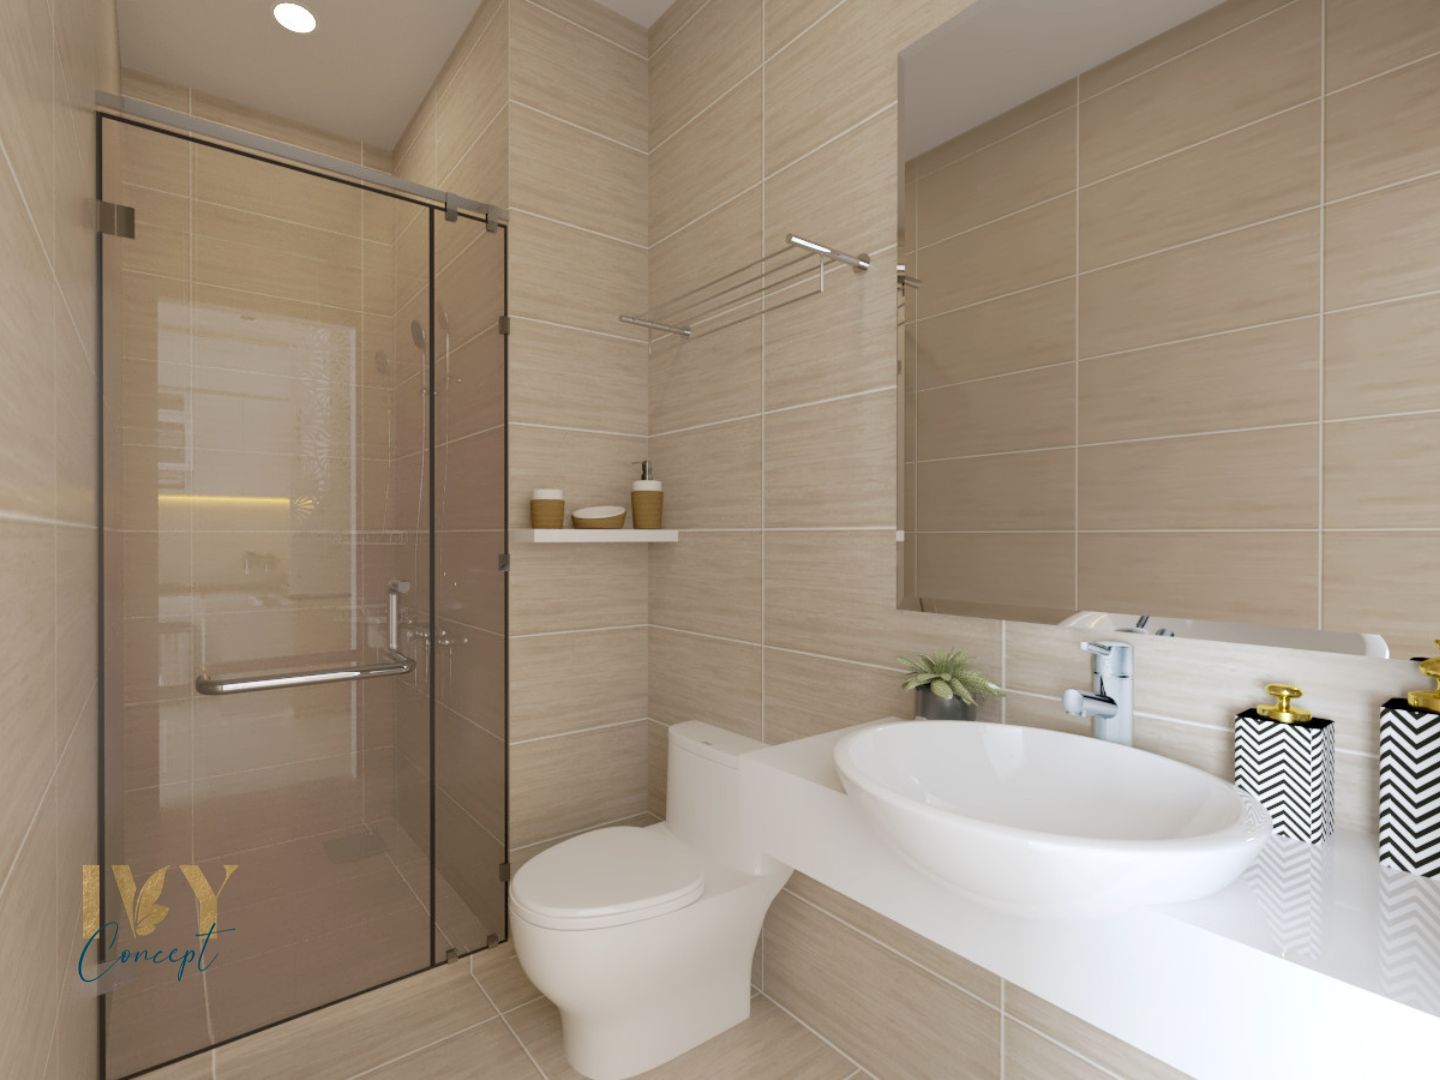 Phòng tắm, phong cách Hiện đại Modern, thiết kế concept nội thất, căn hộ Vinhomes Grand Park